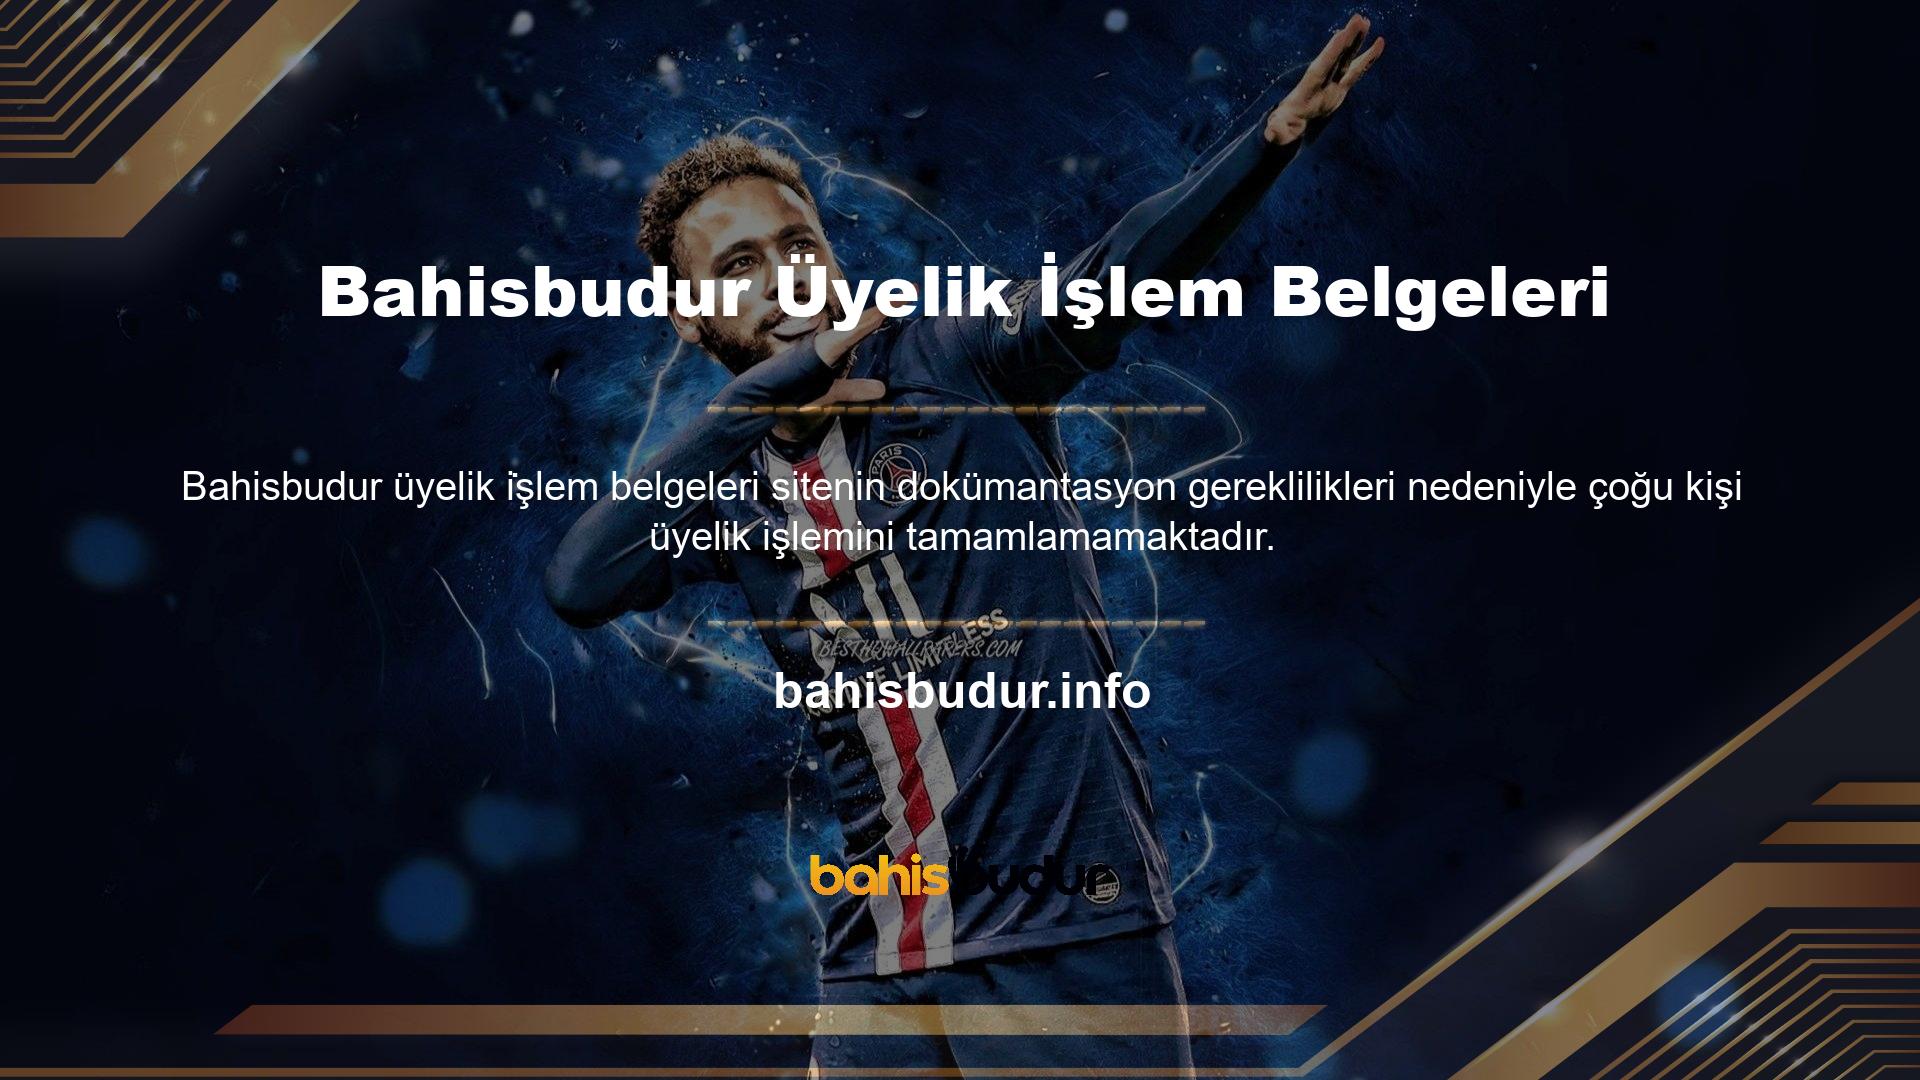 Bahisbudur web sitesi üyelik süresince herhangi bir belge istememektedir